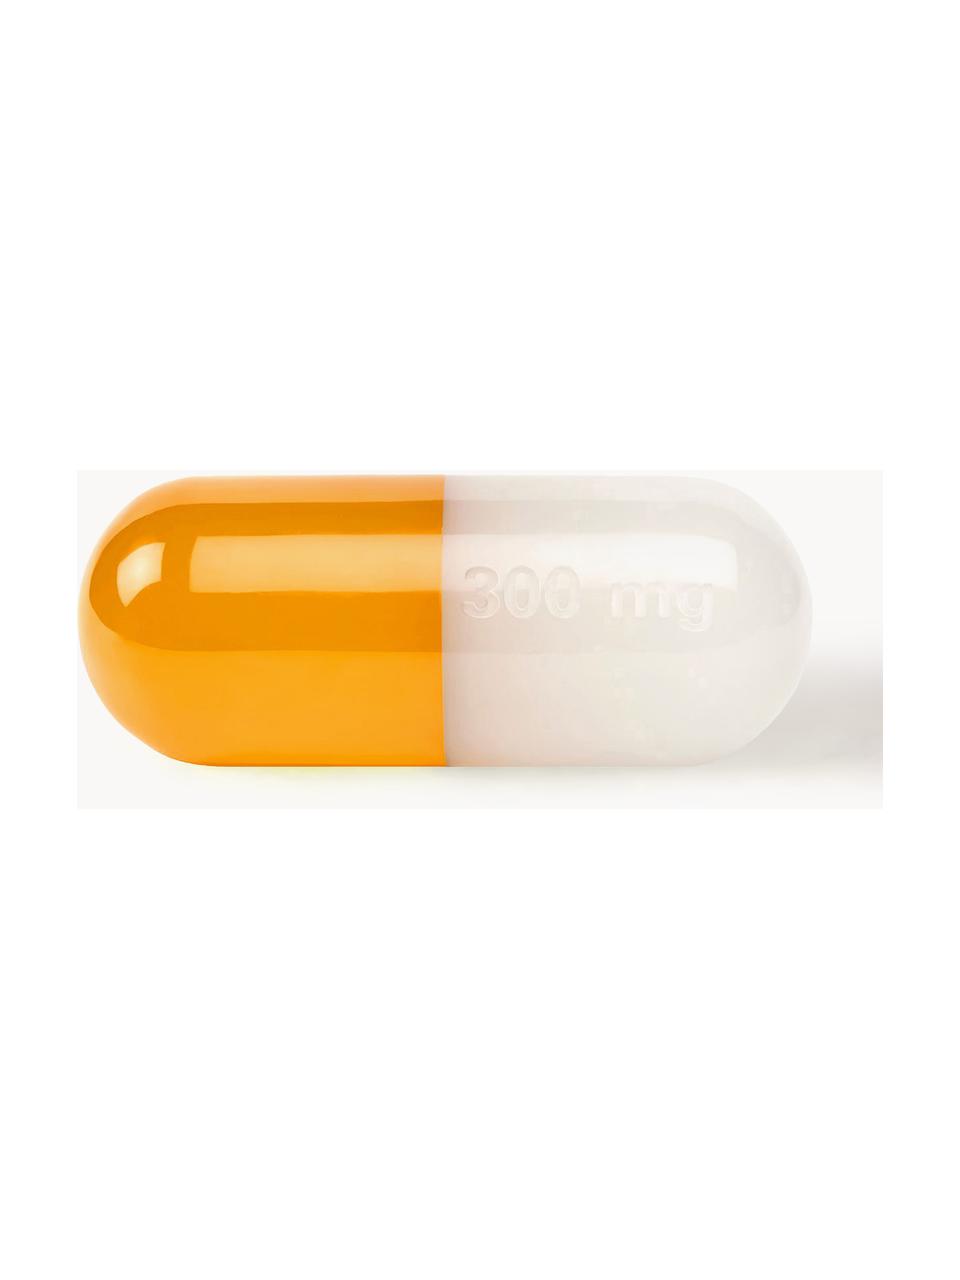 Dekorace Pill, Polyakrylát, leštěný, Bílá, oranžová, Š 24 cm, V 9 cm